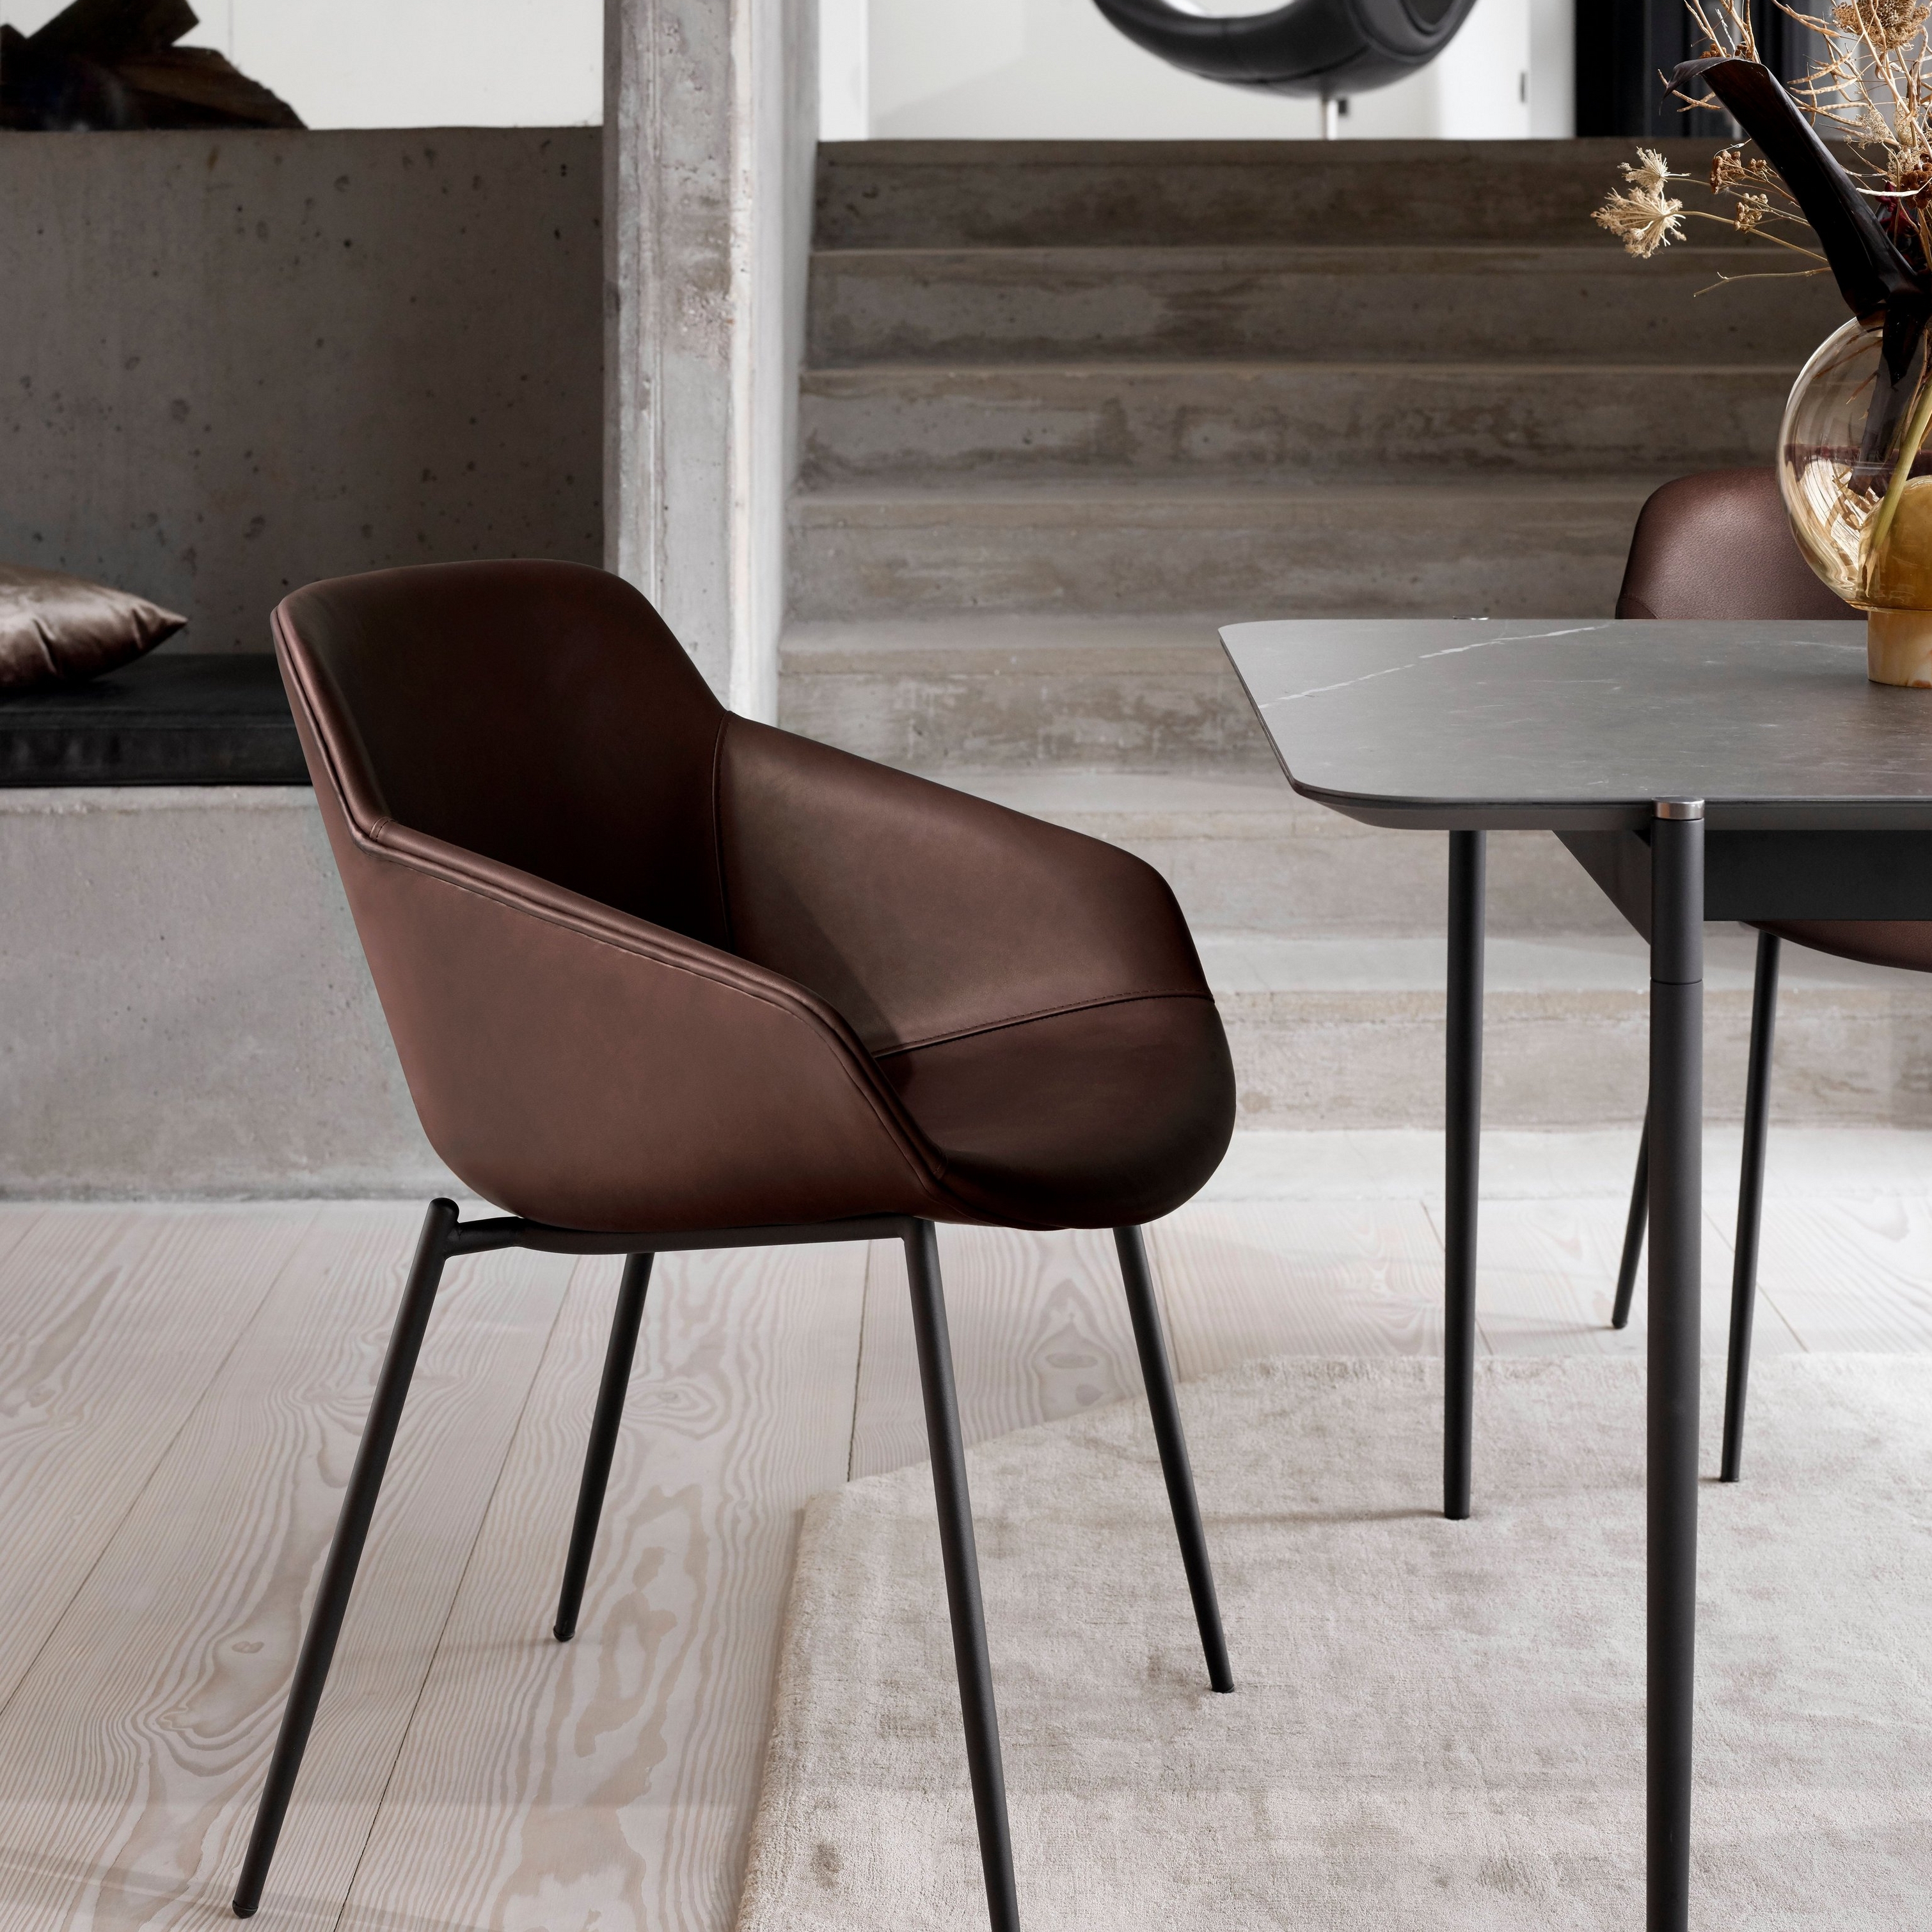 Nahkainen ruokapöydän tuoli mustilla jaloilla, lähellä pöytä ja maljakko modernissa ympäristössä.